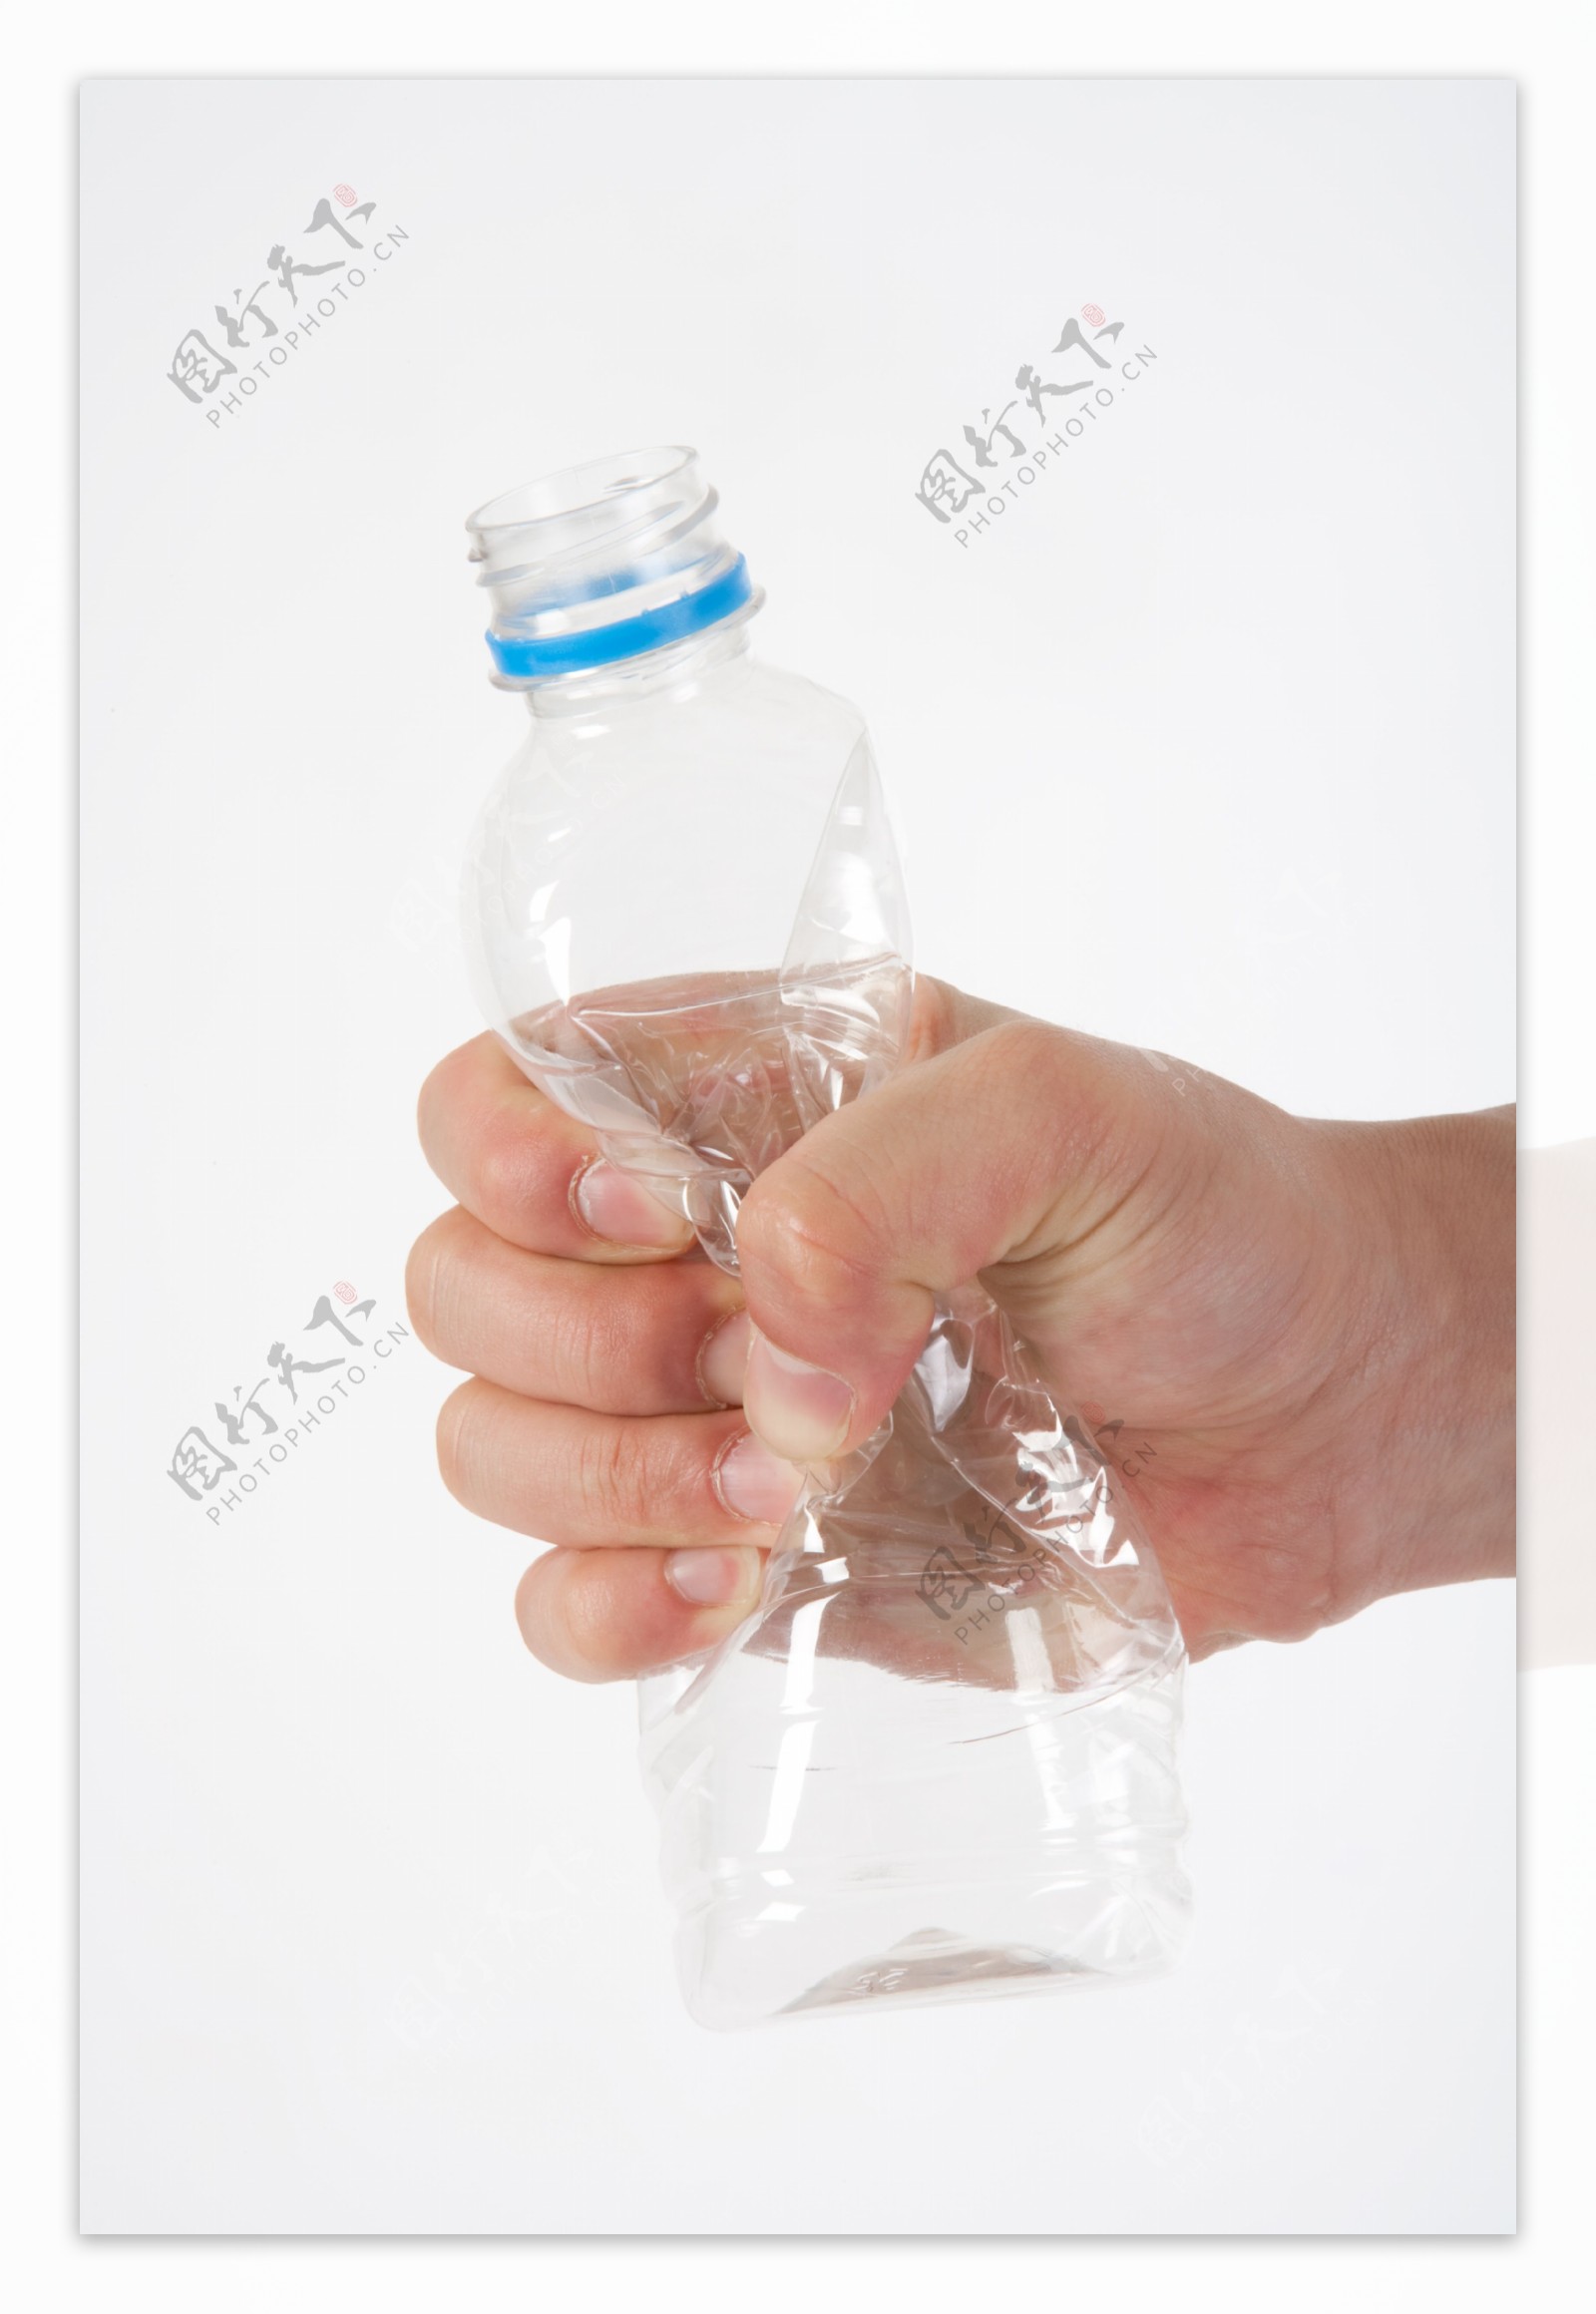 用手捏变形的矿泉水水瓶图片